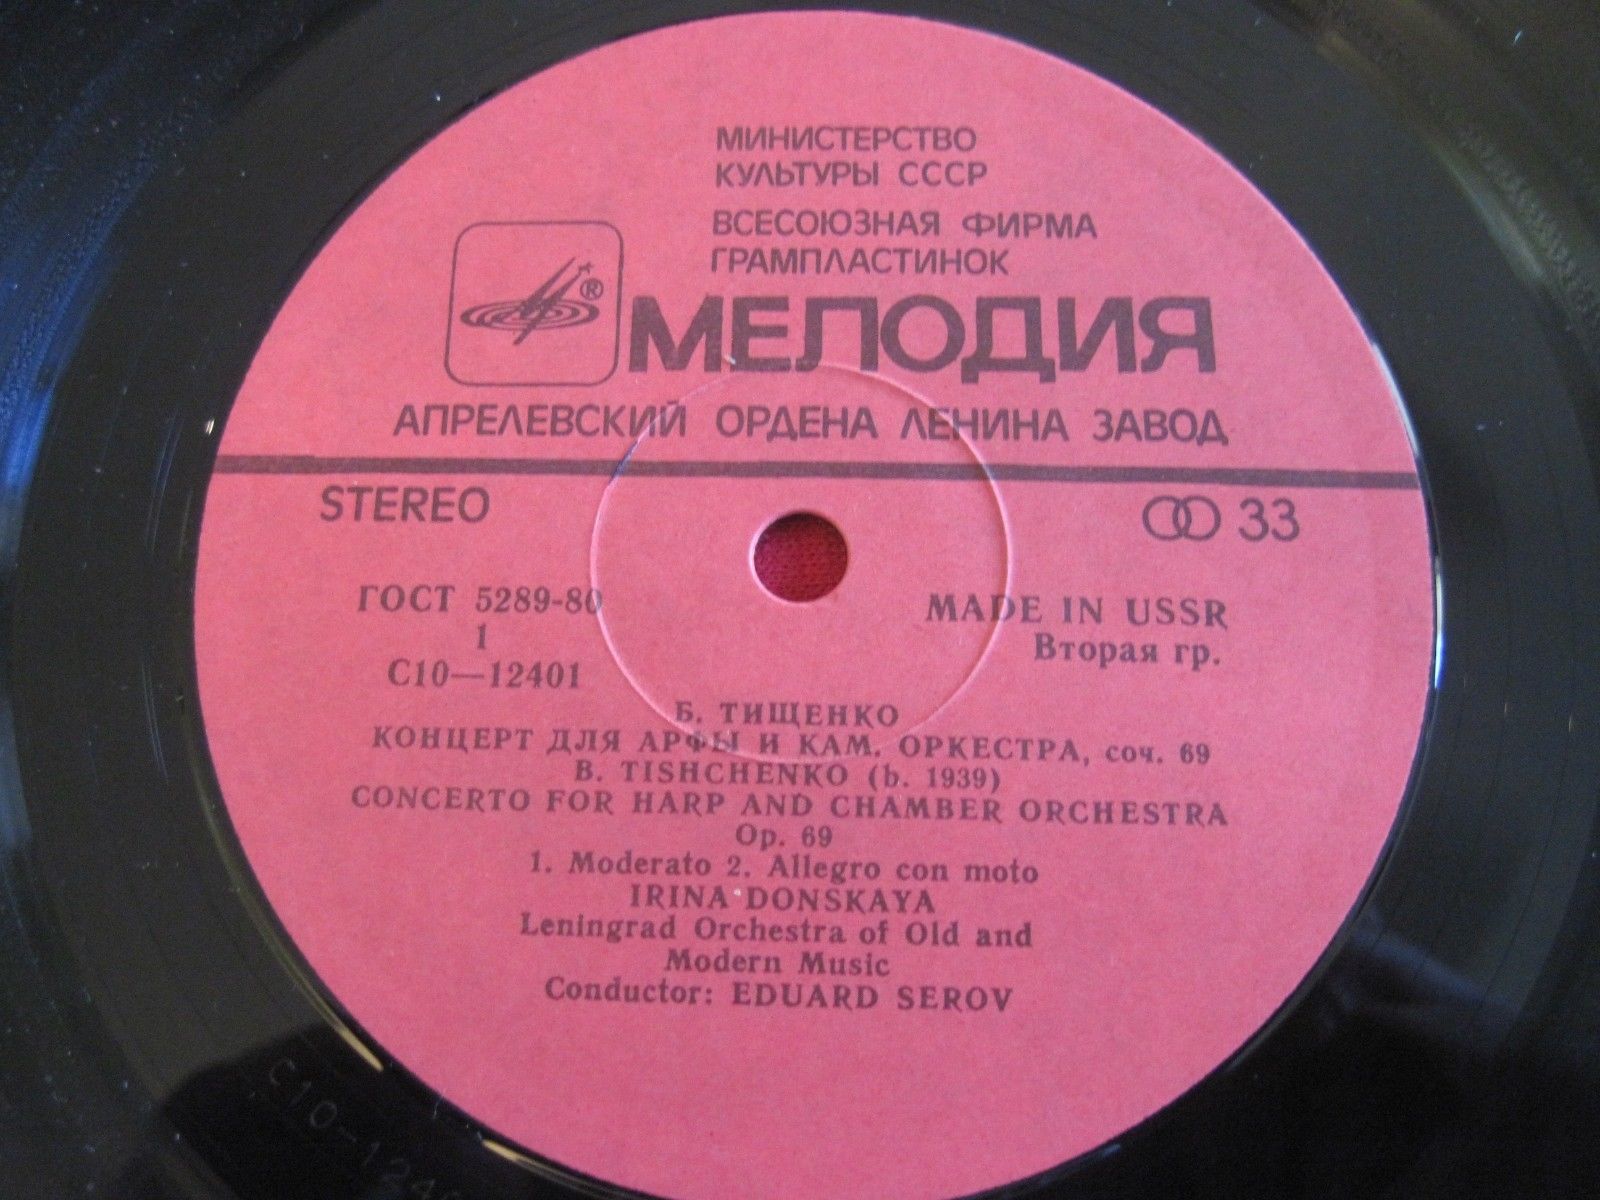 Б. ТИЩЕНКО (1939): Концерт для арфы и камерного оркестра, соч. 69.